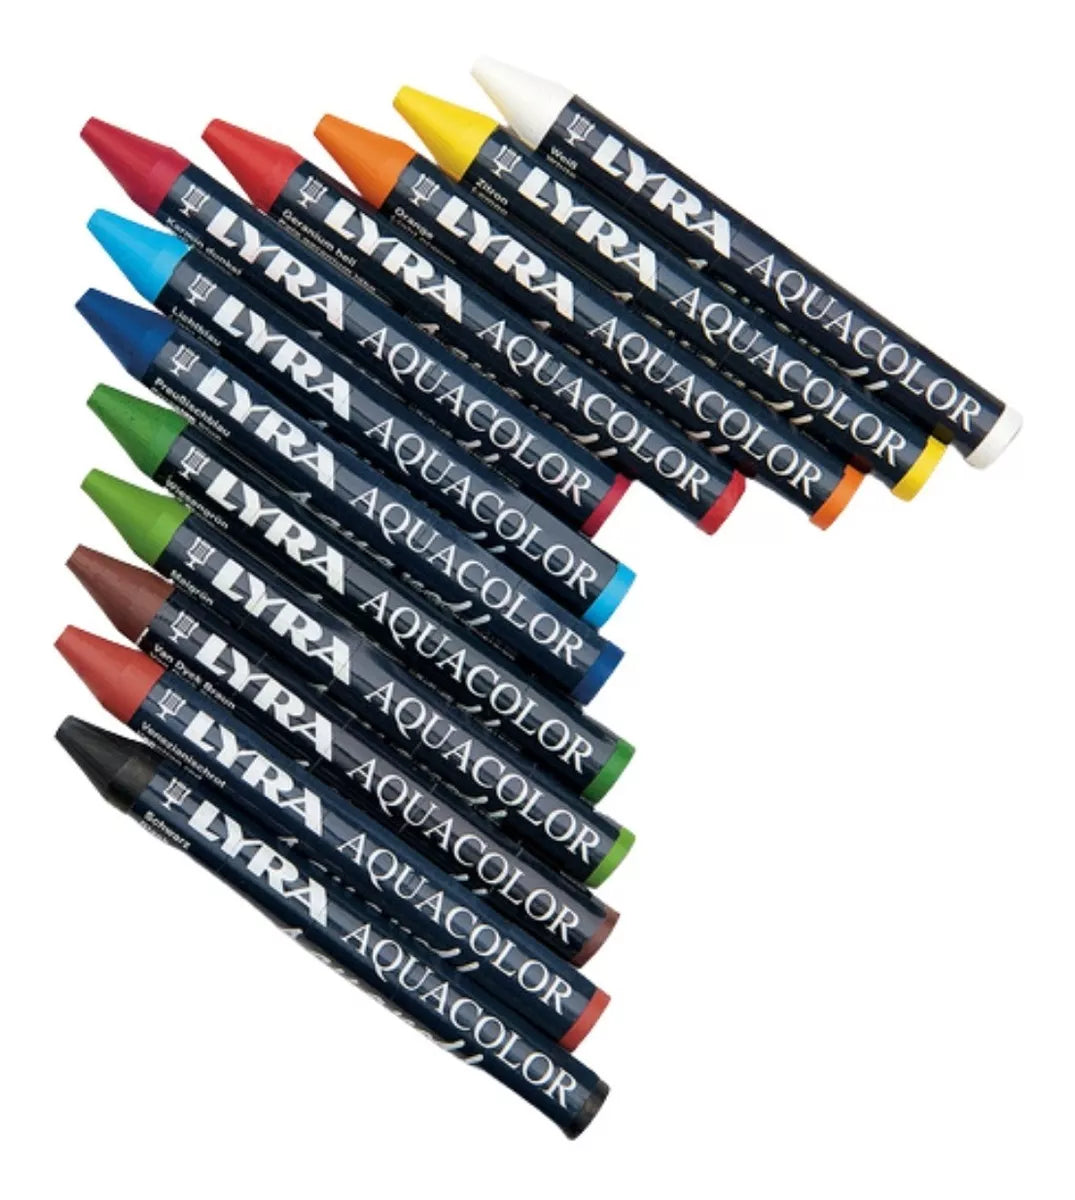 Crayones Acuarelables Lyra Aquacolor Cera Set 12 Piezas